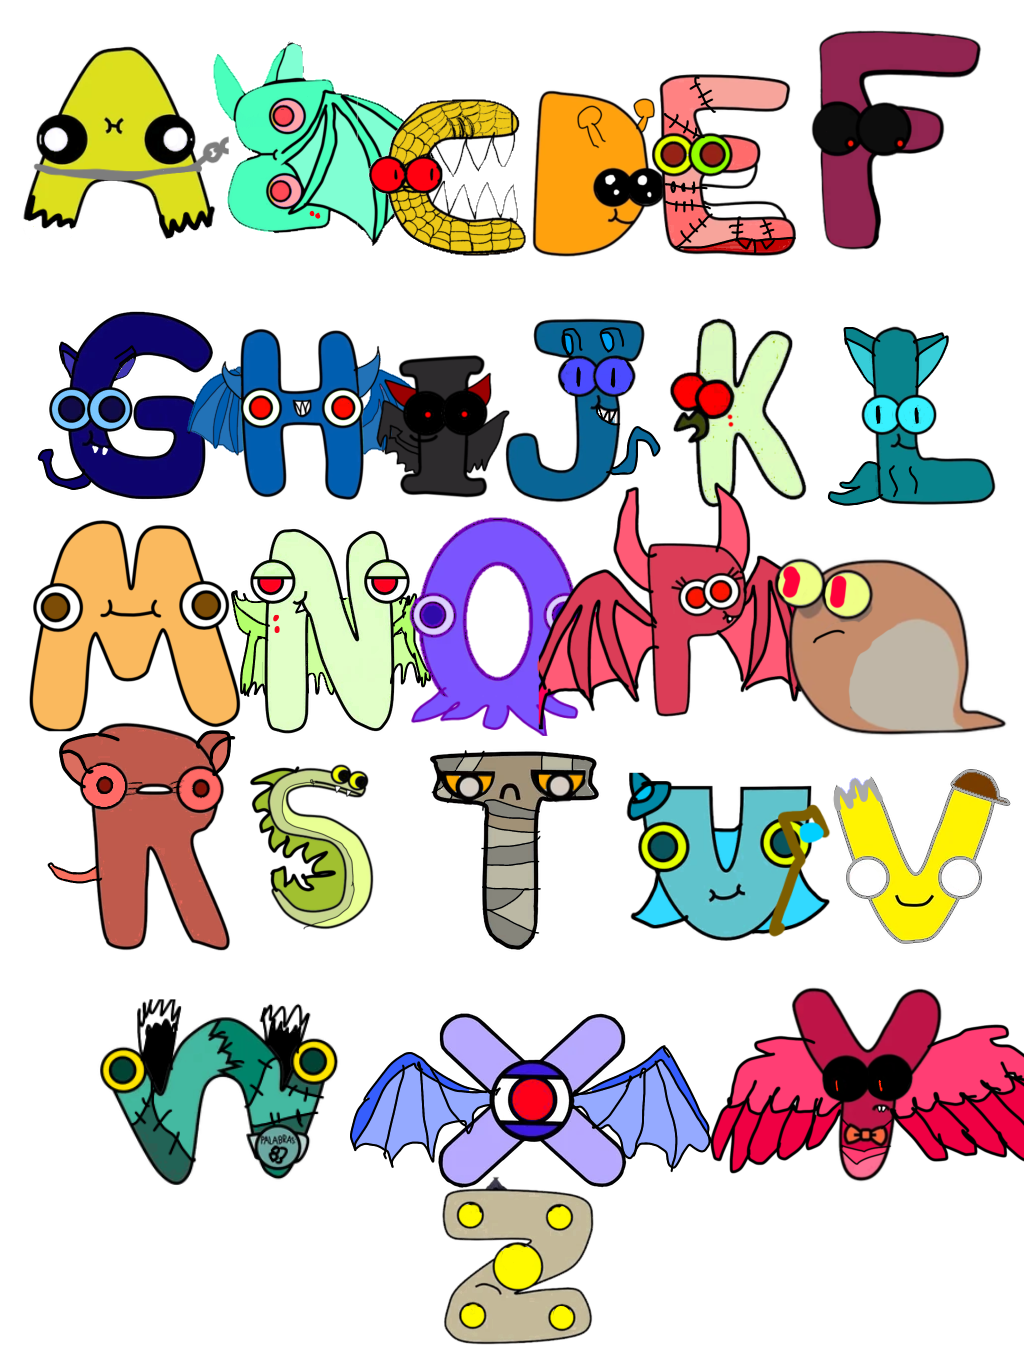 Spanish Alphabet Lore Monster AU - S by MissKoehler49 on DeviantArt